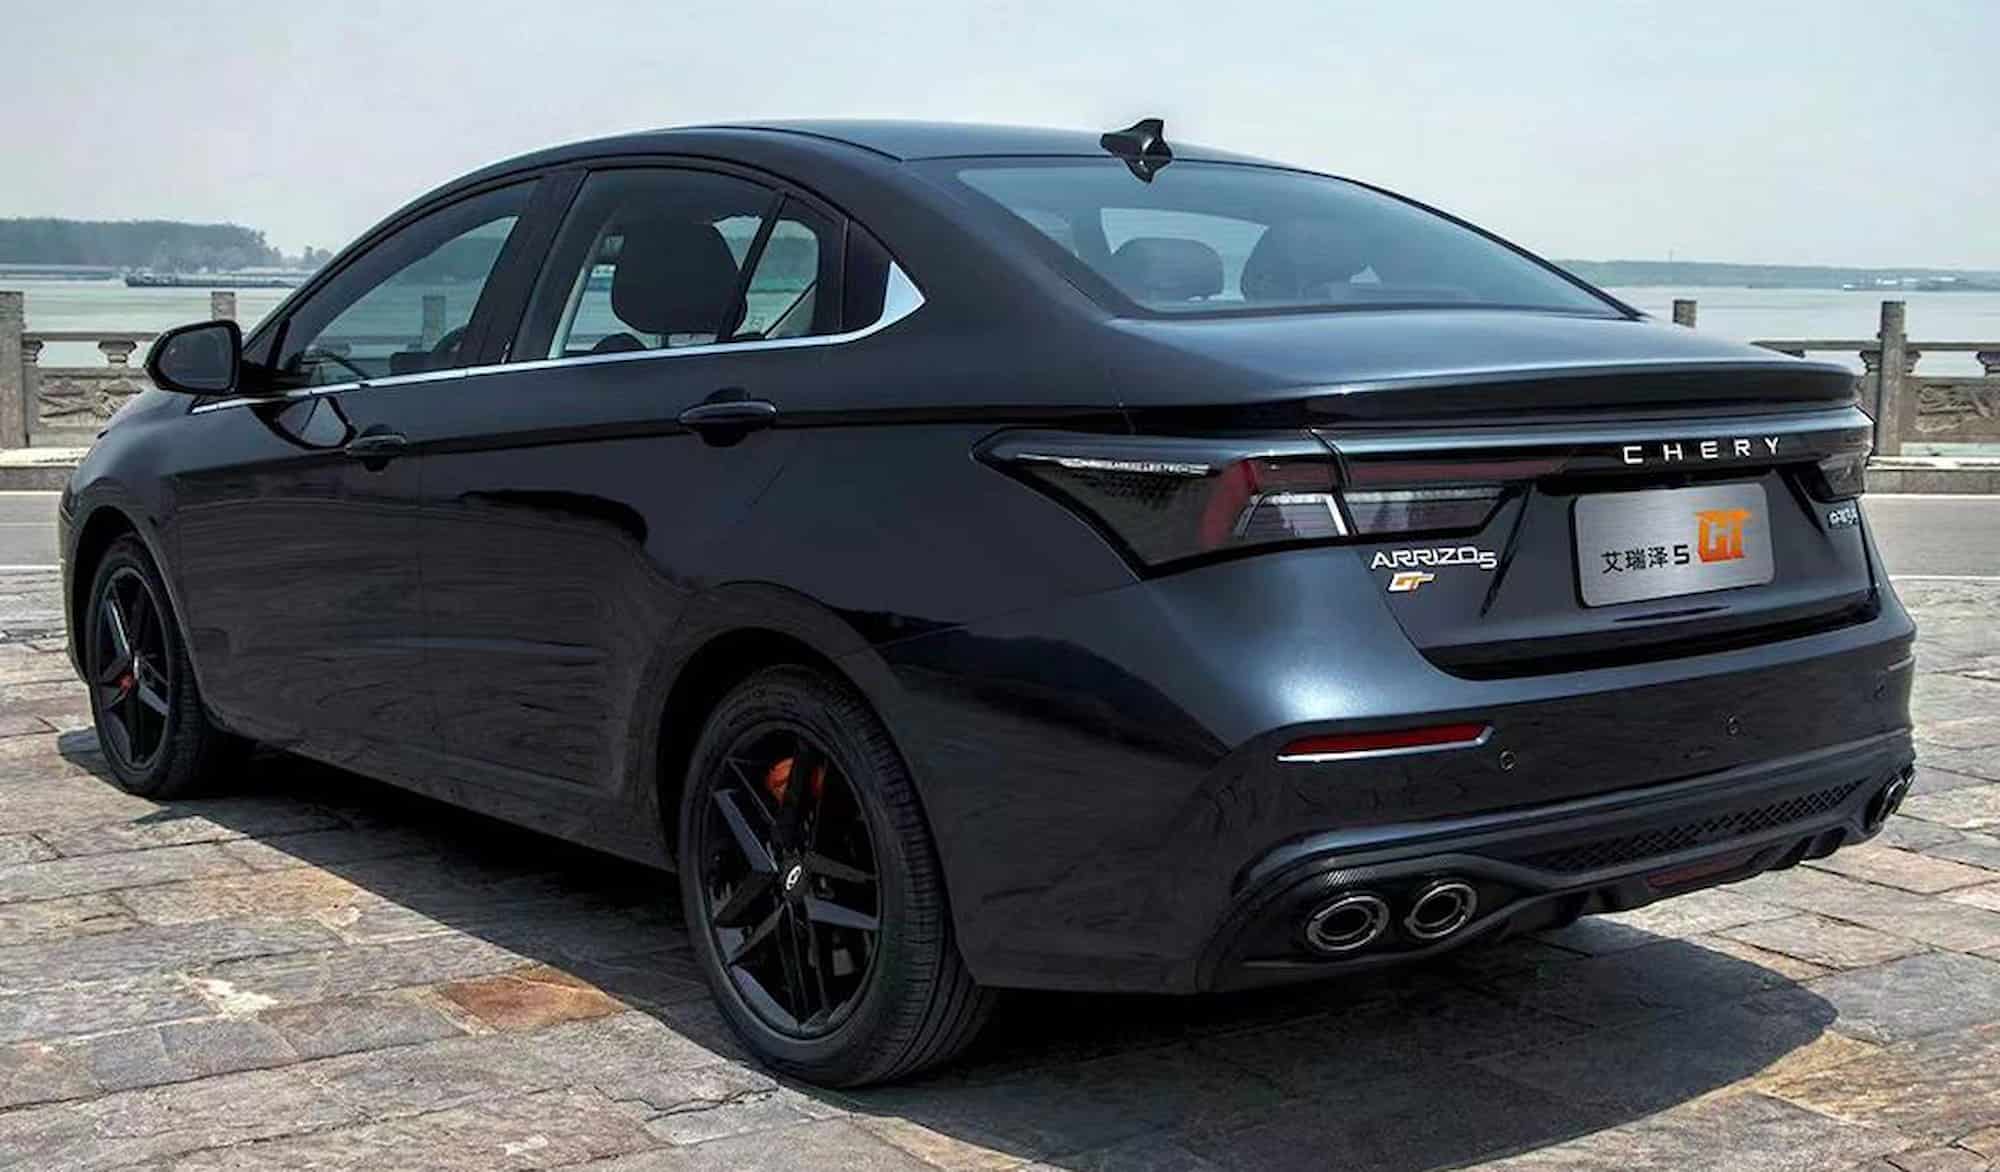 Новый спортивный седан Chery Arrizo 5 GT 2023 года с дизайном Lexus поступит в продажу в Китае. Обзор автомобилей и цены